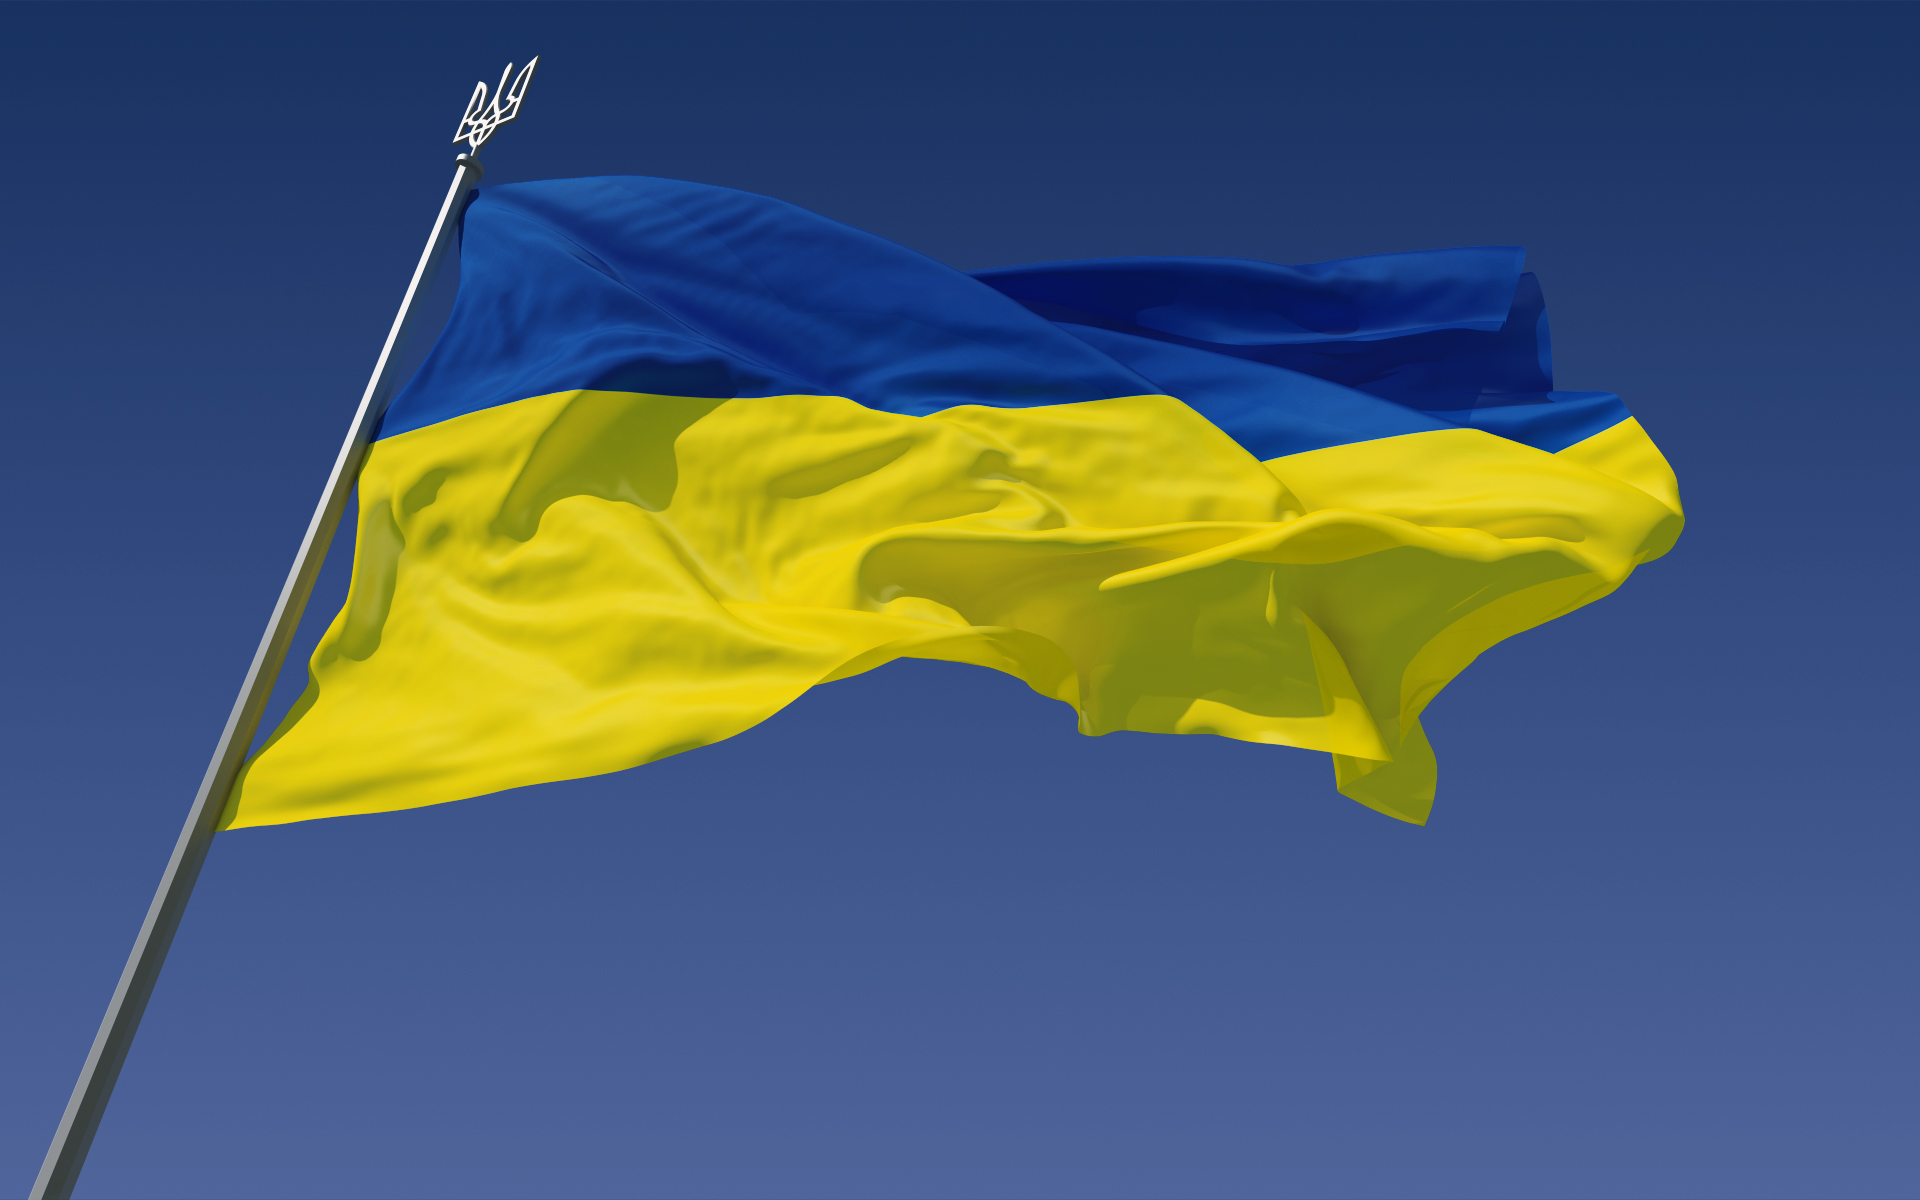 توقيف مسؤولين كبيرين بتهمة الفساد اثناء اجتماع للحكومة في اوكرانيا